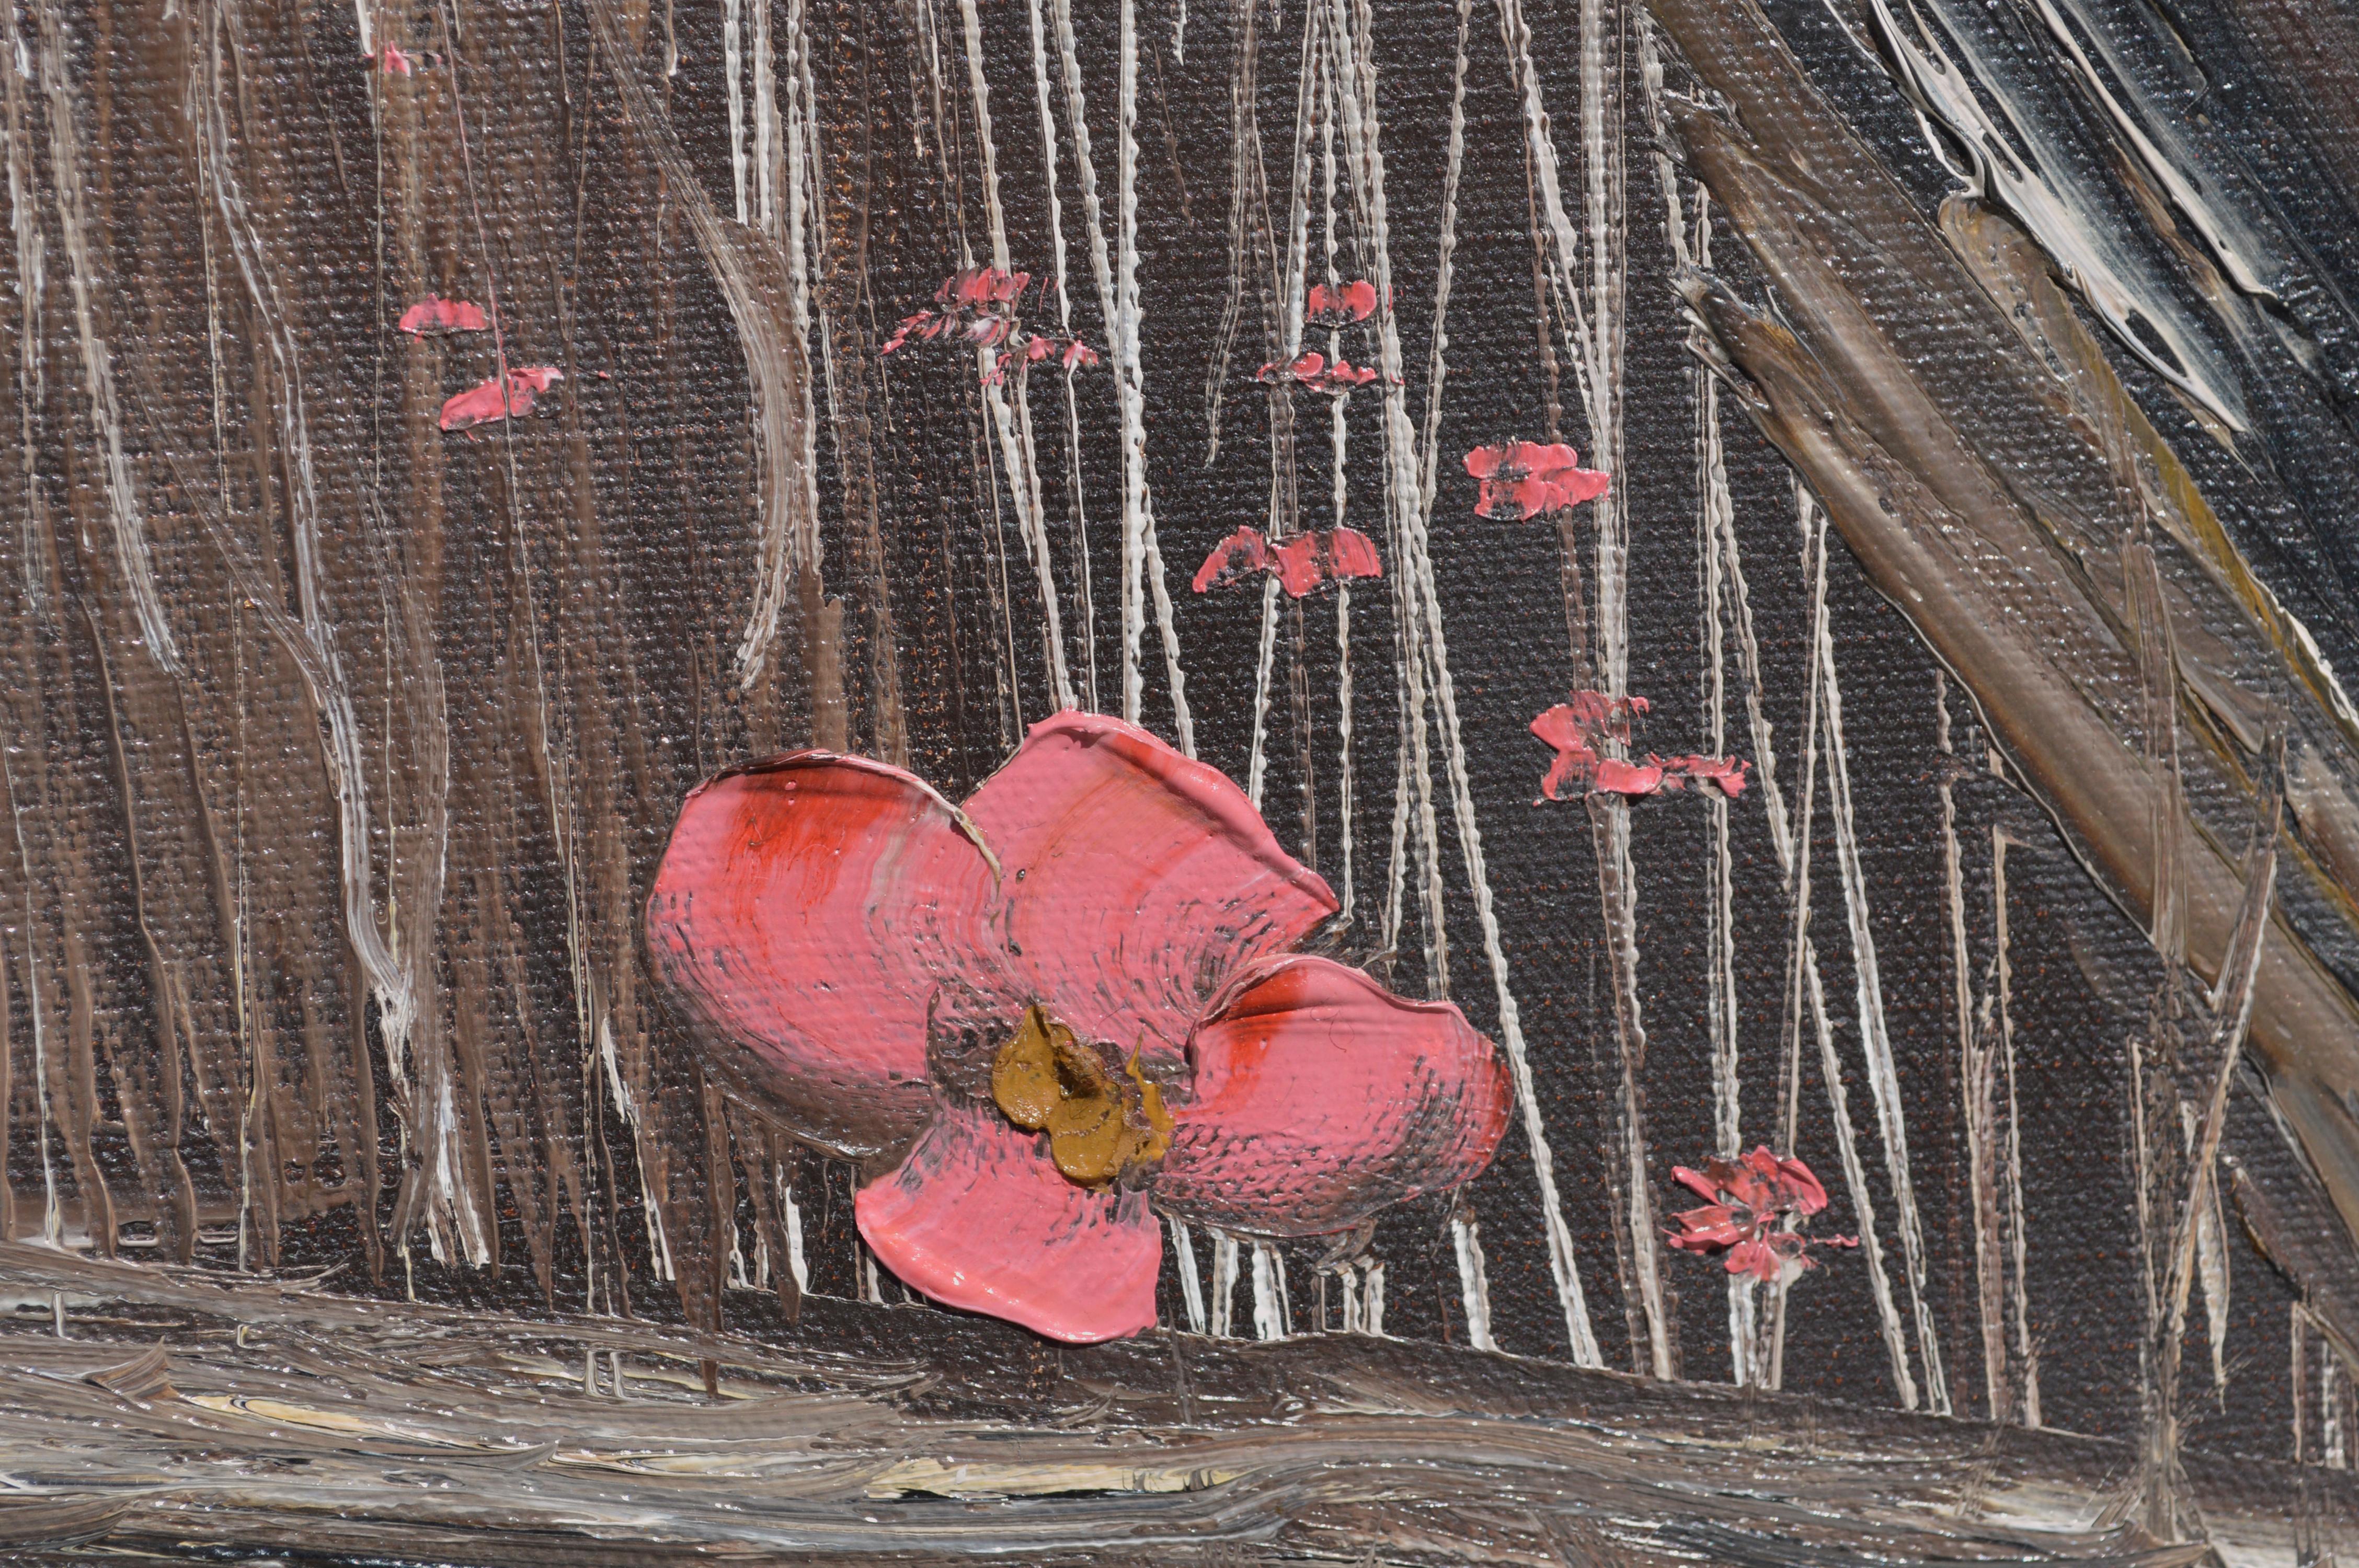 Paysage expressif et audacieux de fleurs s'épanouissant dans un marais par George Petridis (grec, 1940-2016). L'utilisation extensive de l'empâtement crée un sens accru de la profondeur. Signé 